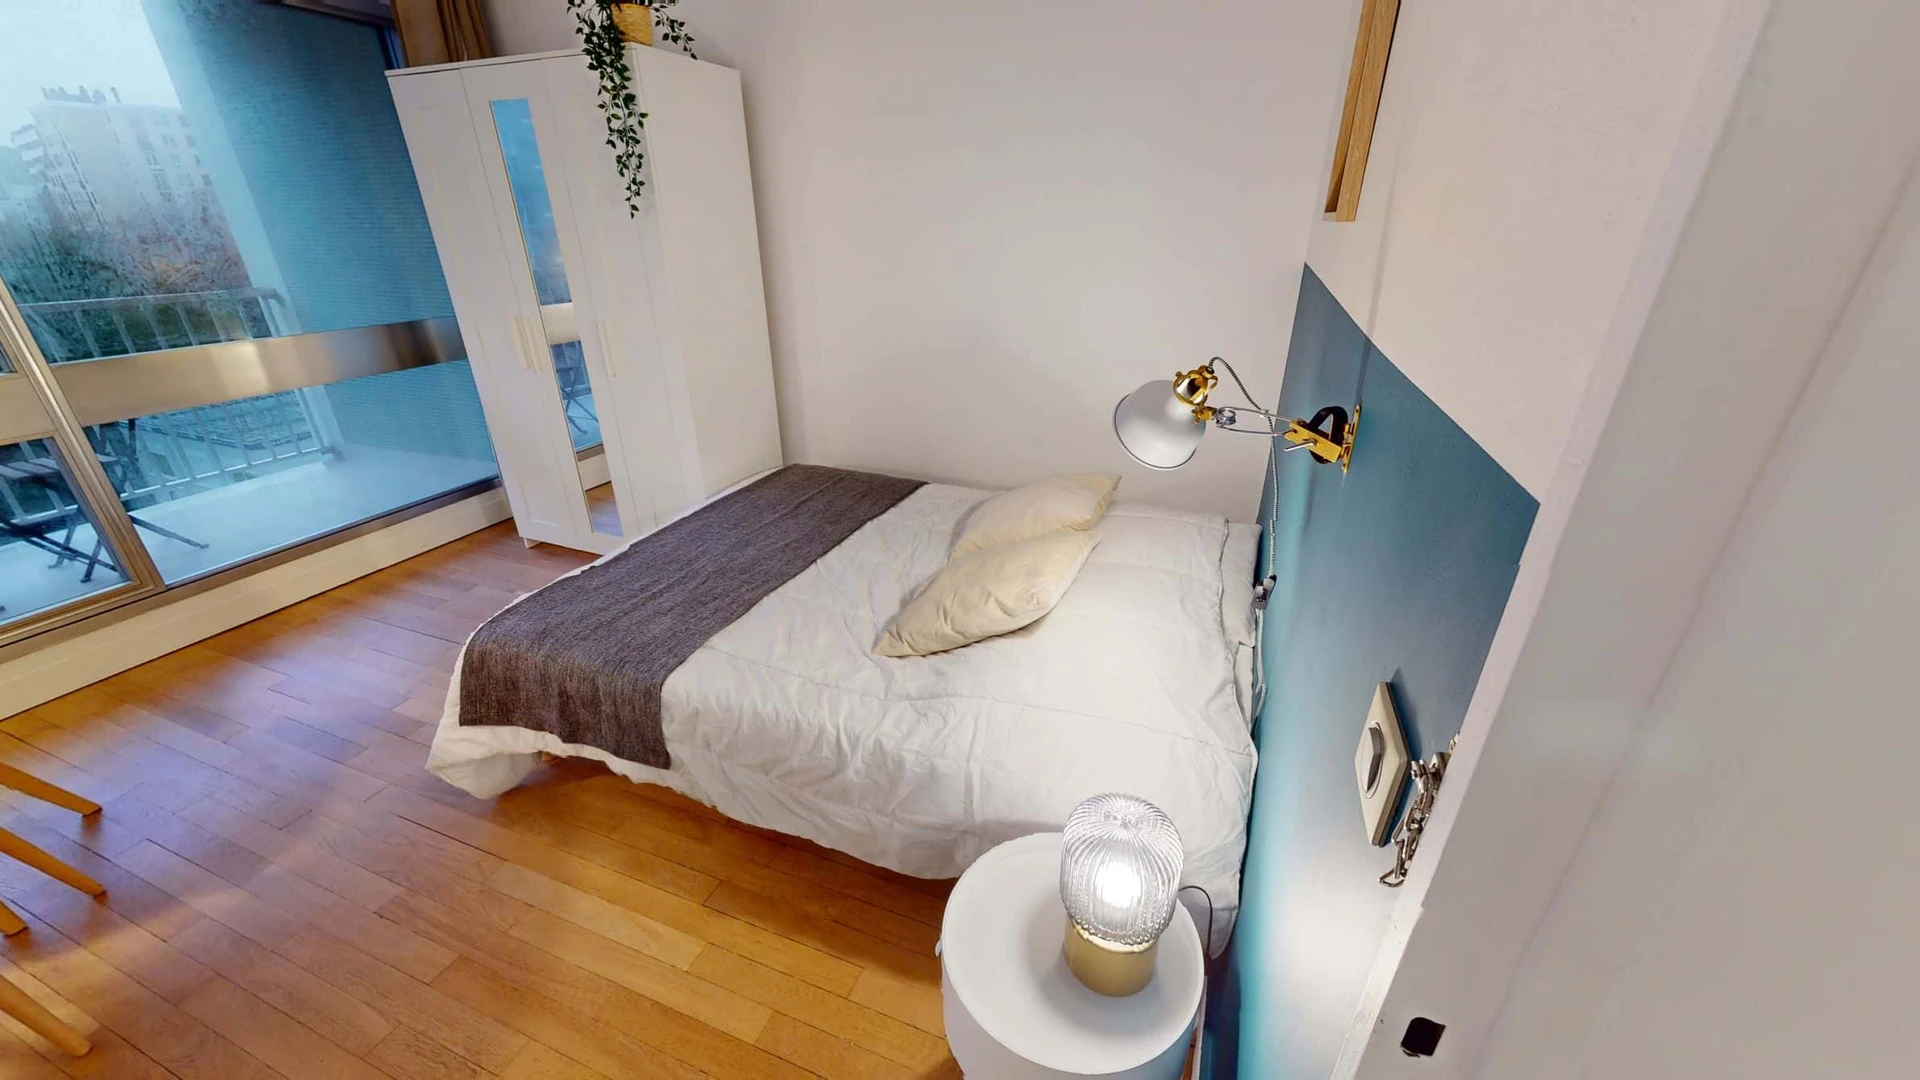 Bright private room in Boulogne-billancourt